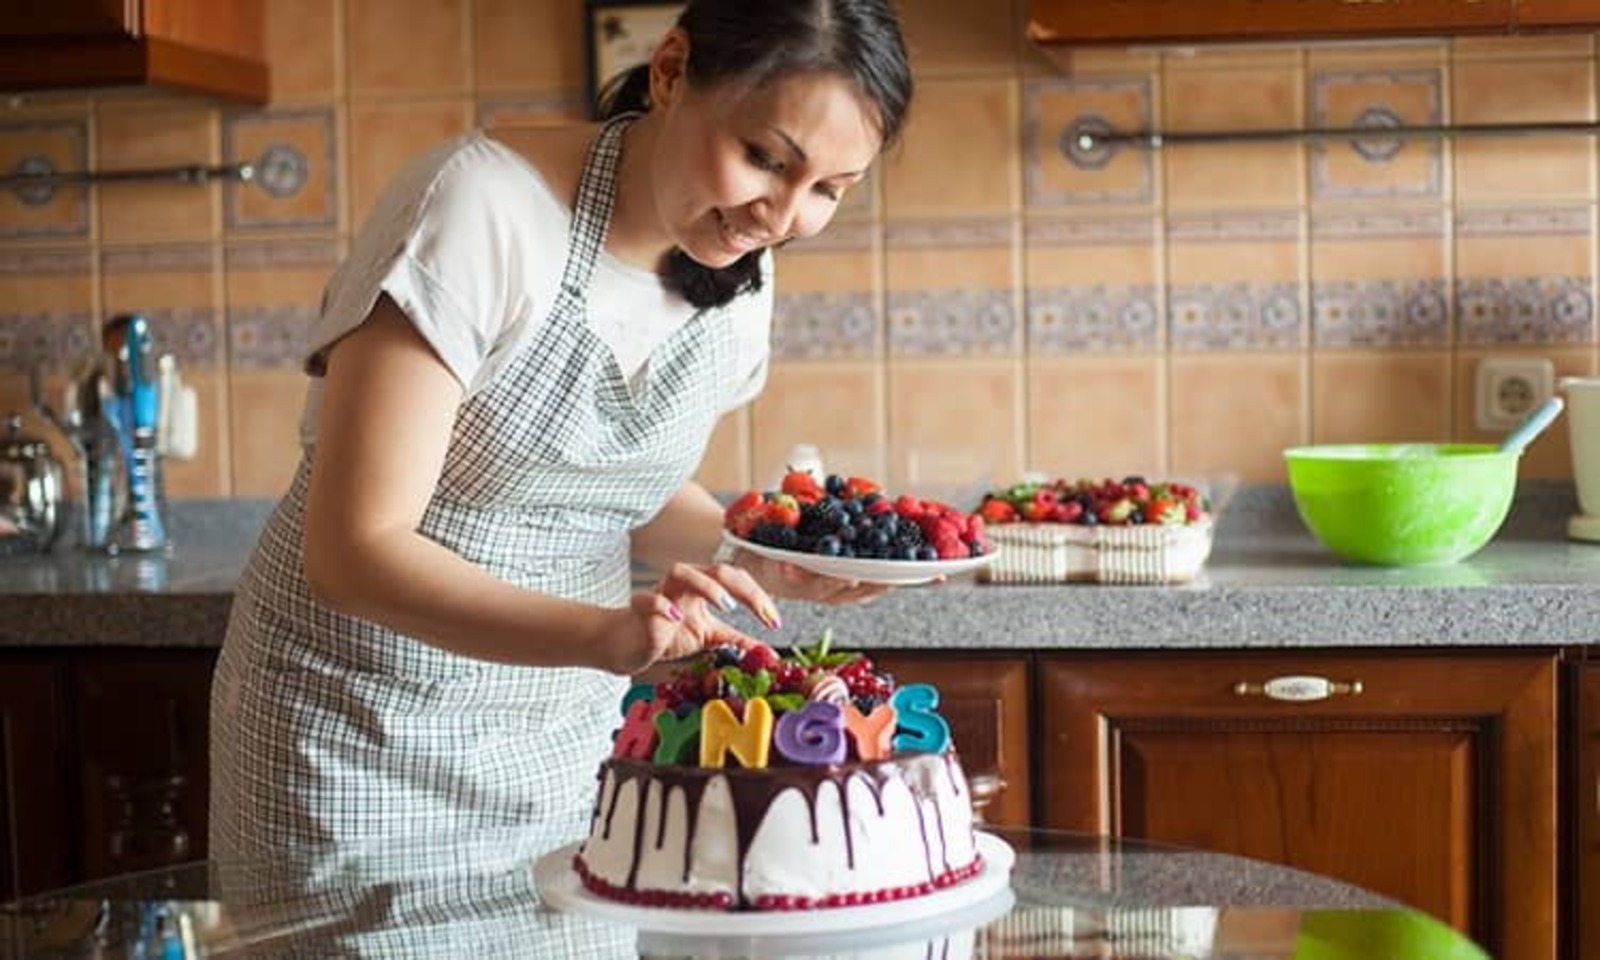 Пироги готовит мама. Торт для женщины. Женщина готовит торт. Девушка печет тортики. Женщина печет торт.